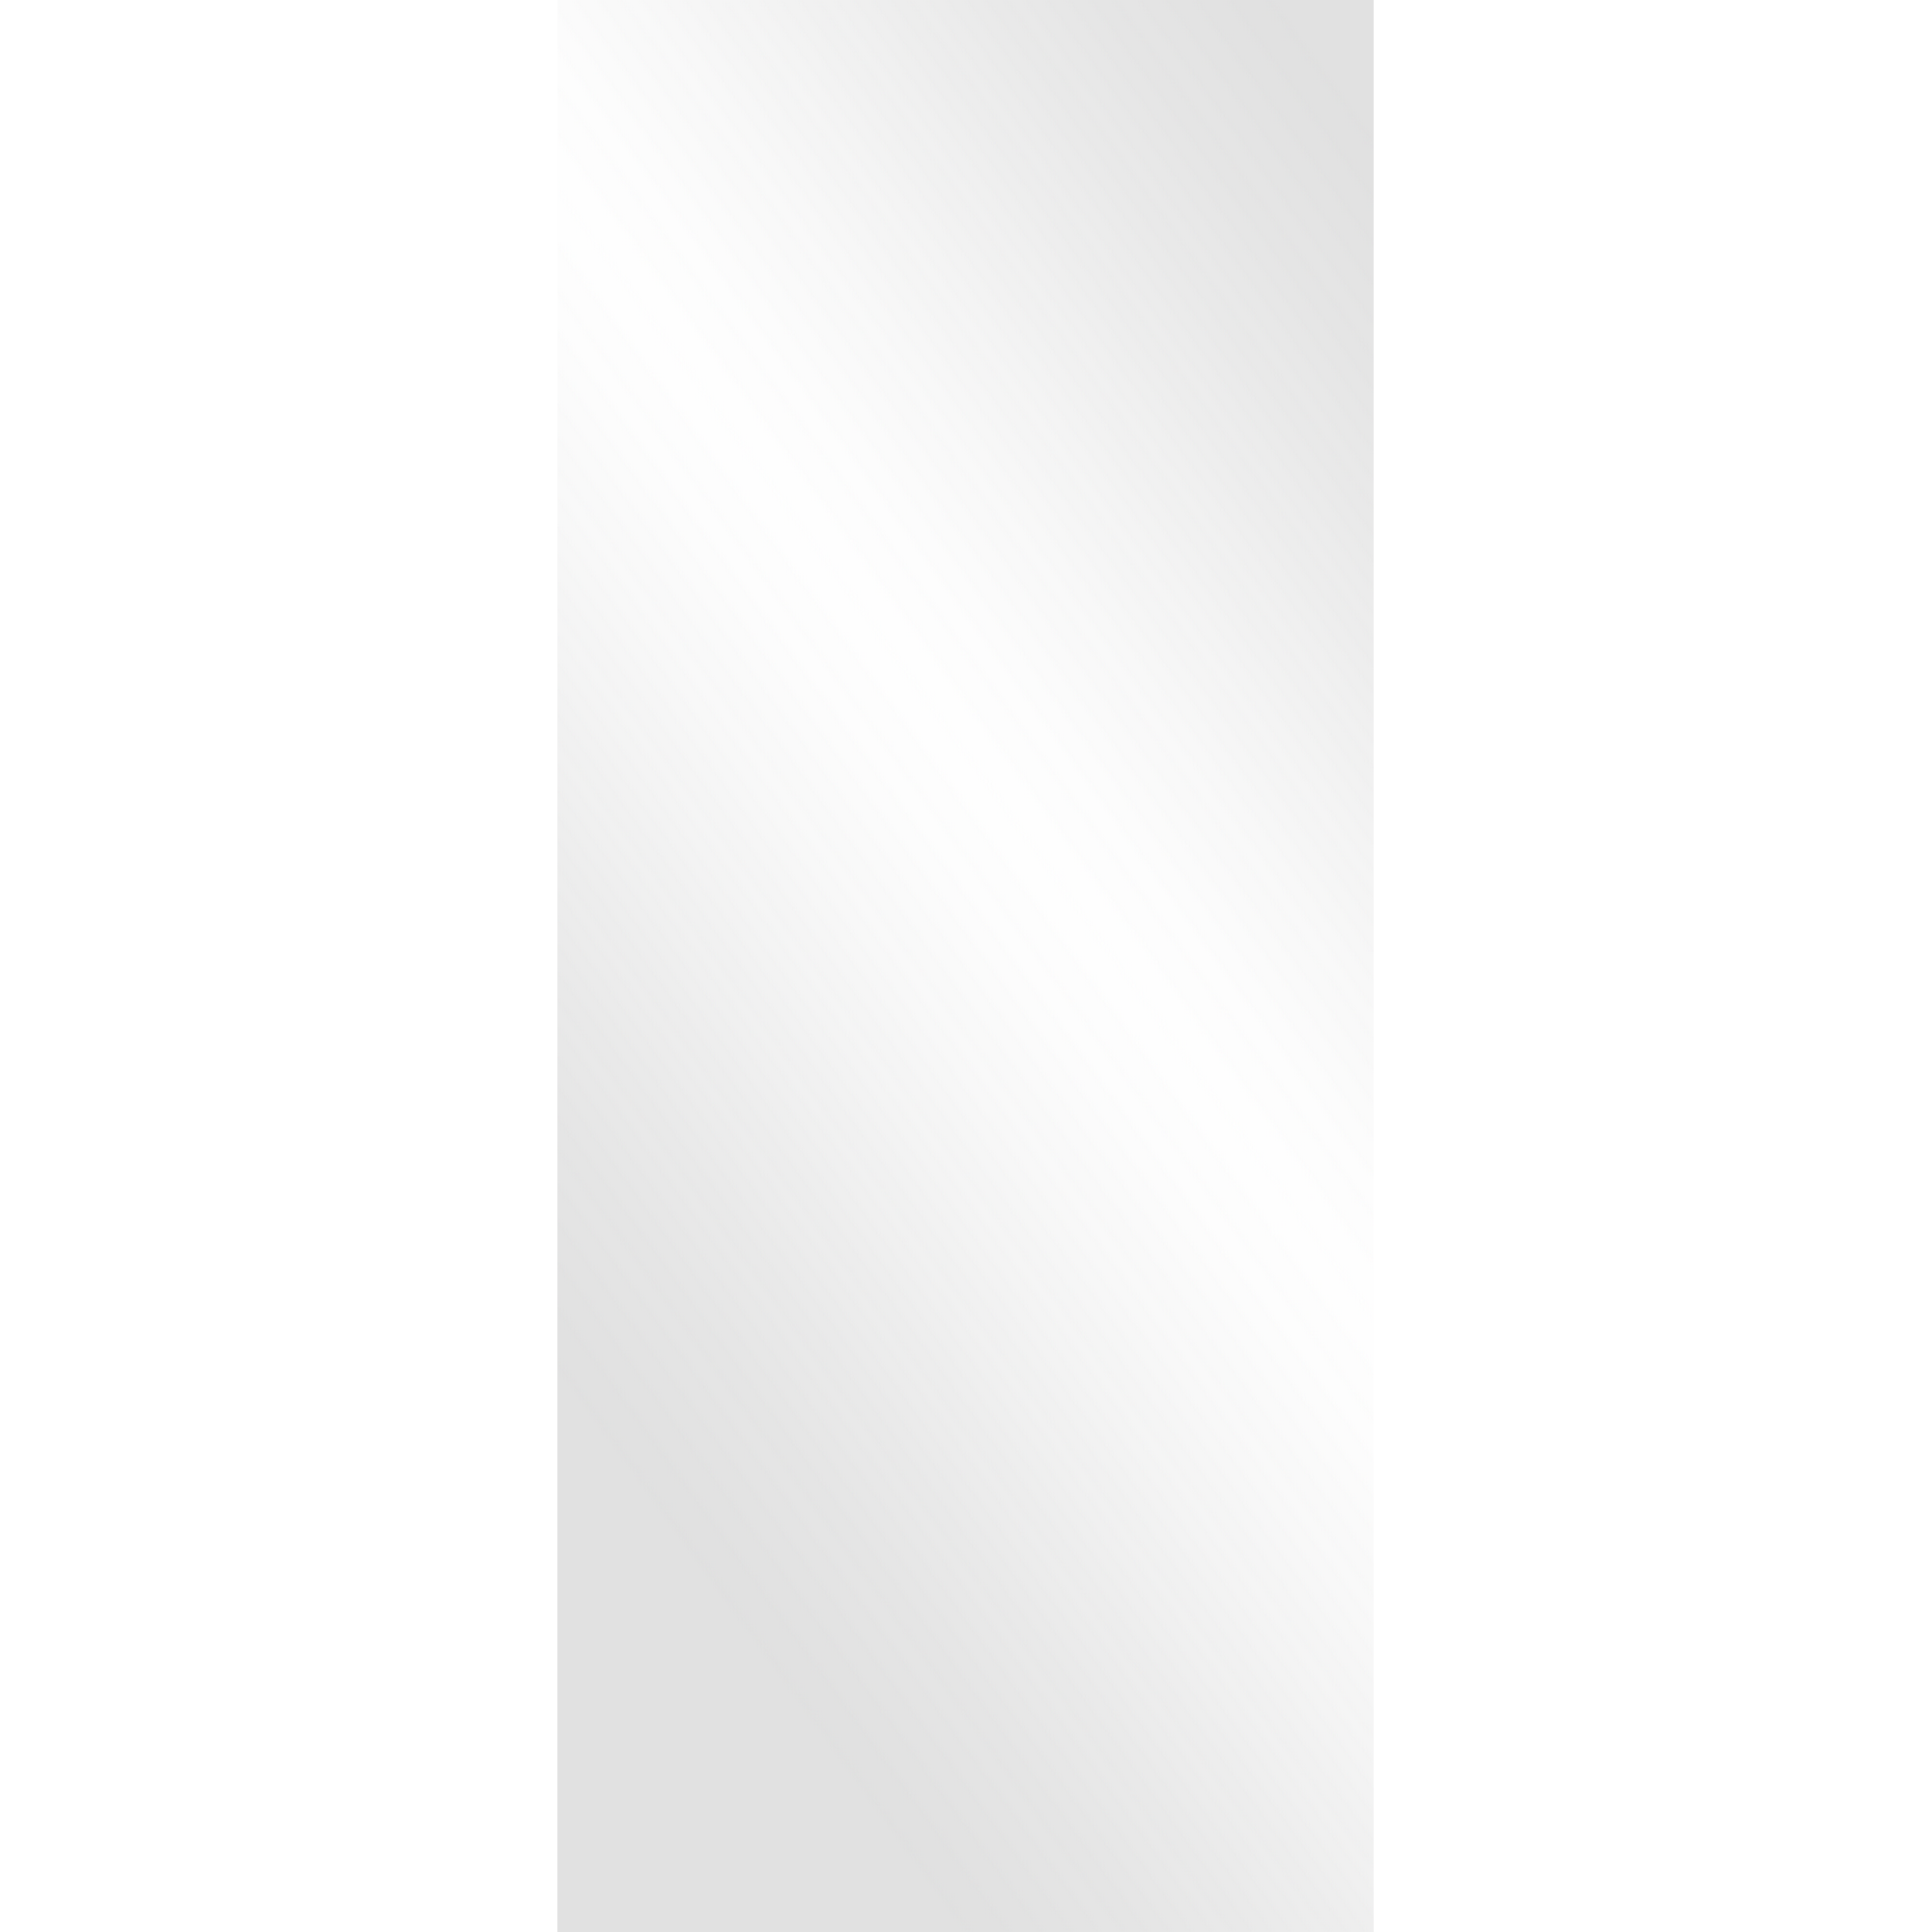 Schiebetür 'Ontario' schwarz weiß 93,5 x 205,8 cm + product picture